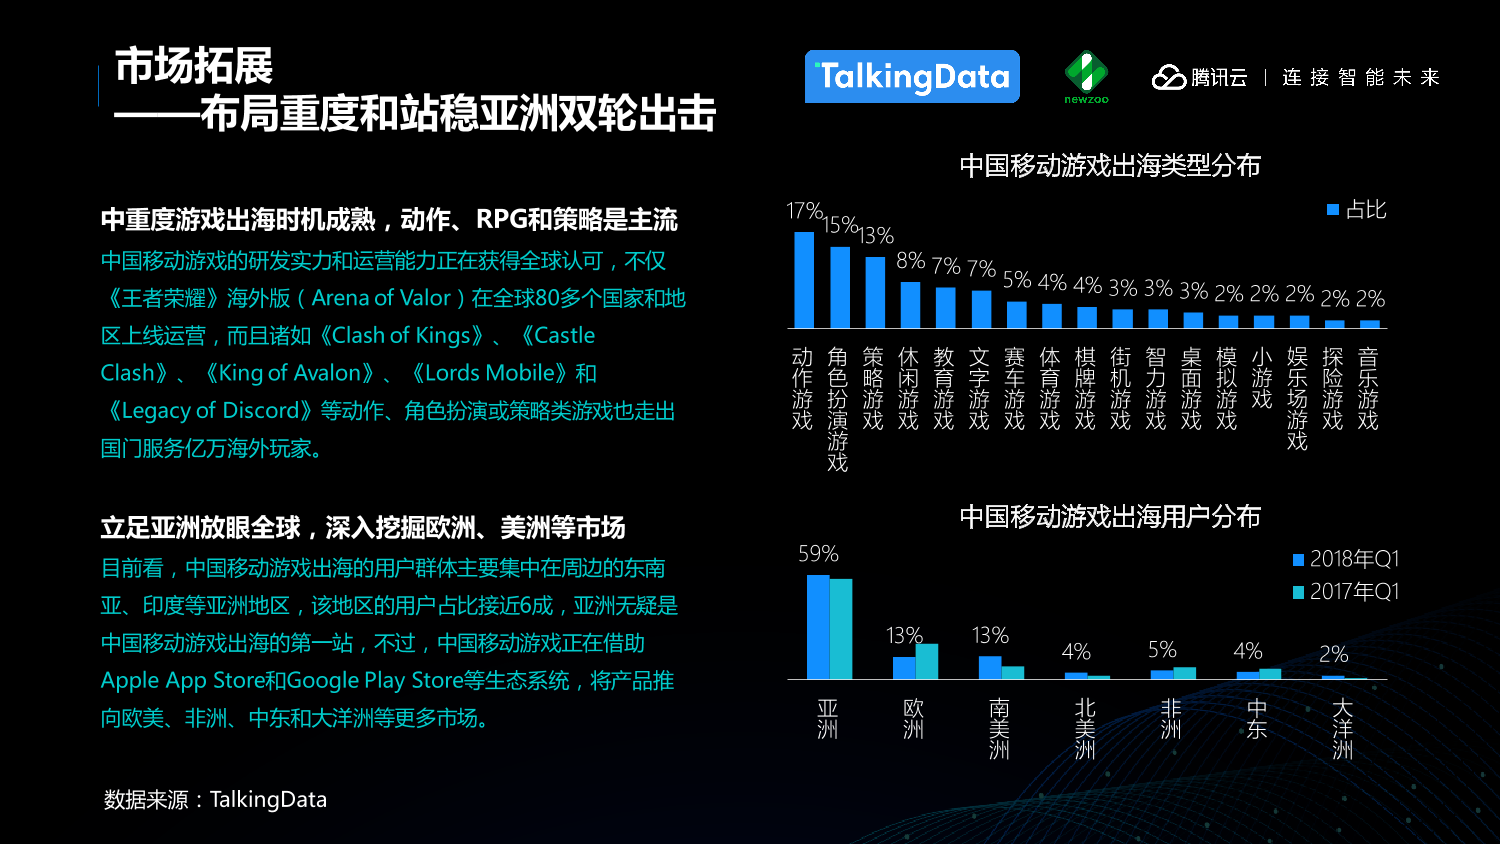 中国移动游戏行业趋势报告_1527559577212-13